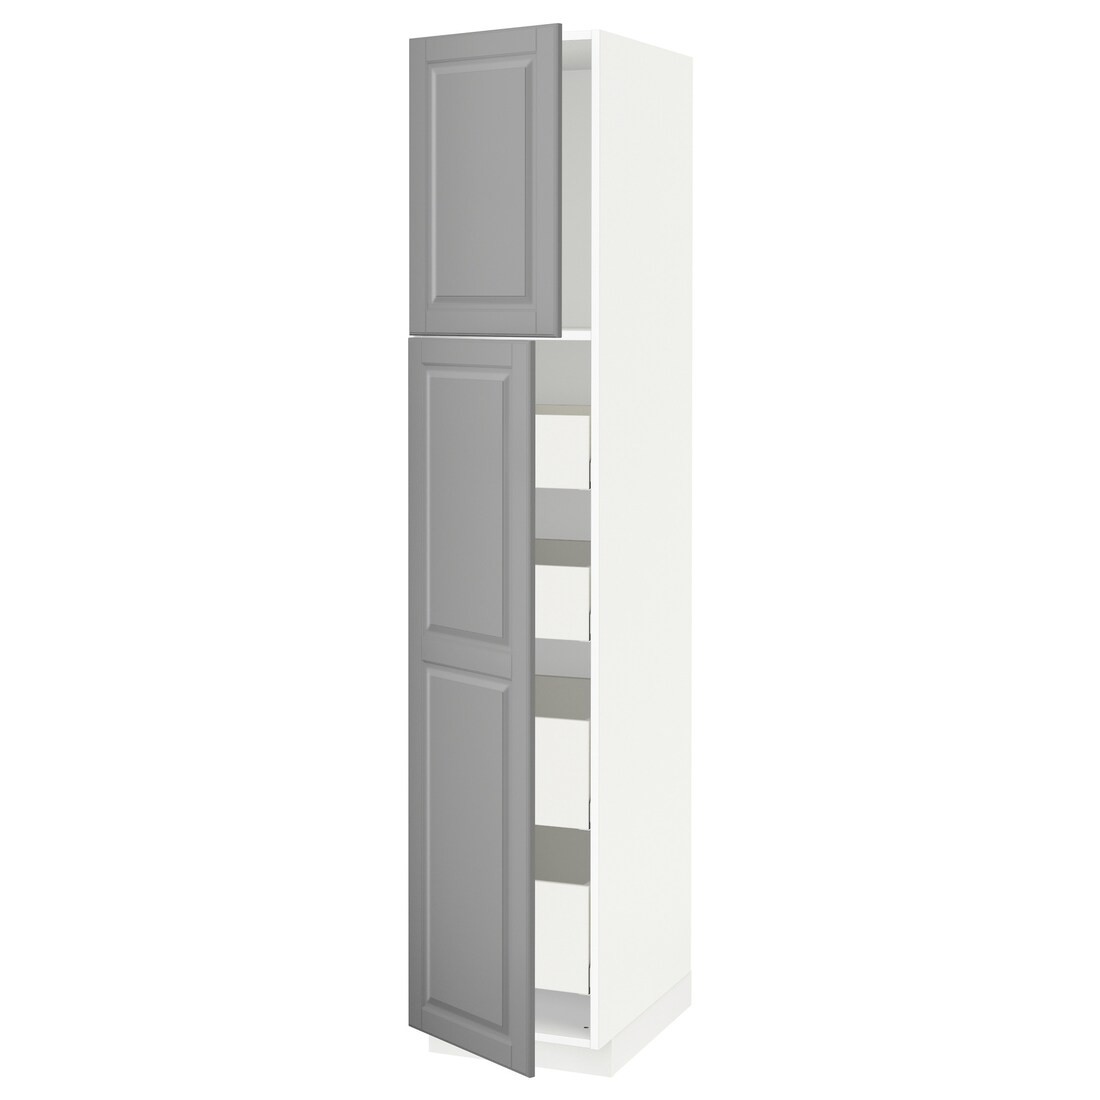 METOD МЕТОД / MAXIMERA МАКСІМЕРА Шафа висока 2 дверей / 4 шухляди, білий / Bodbyn сірий, 40x60x200 см